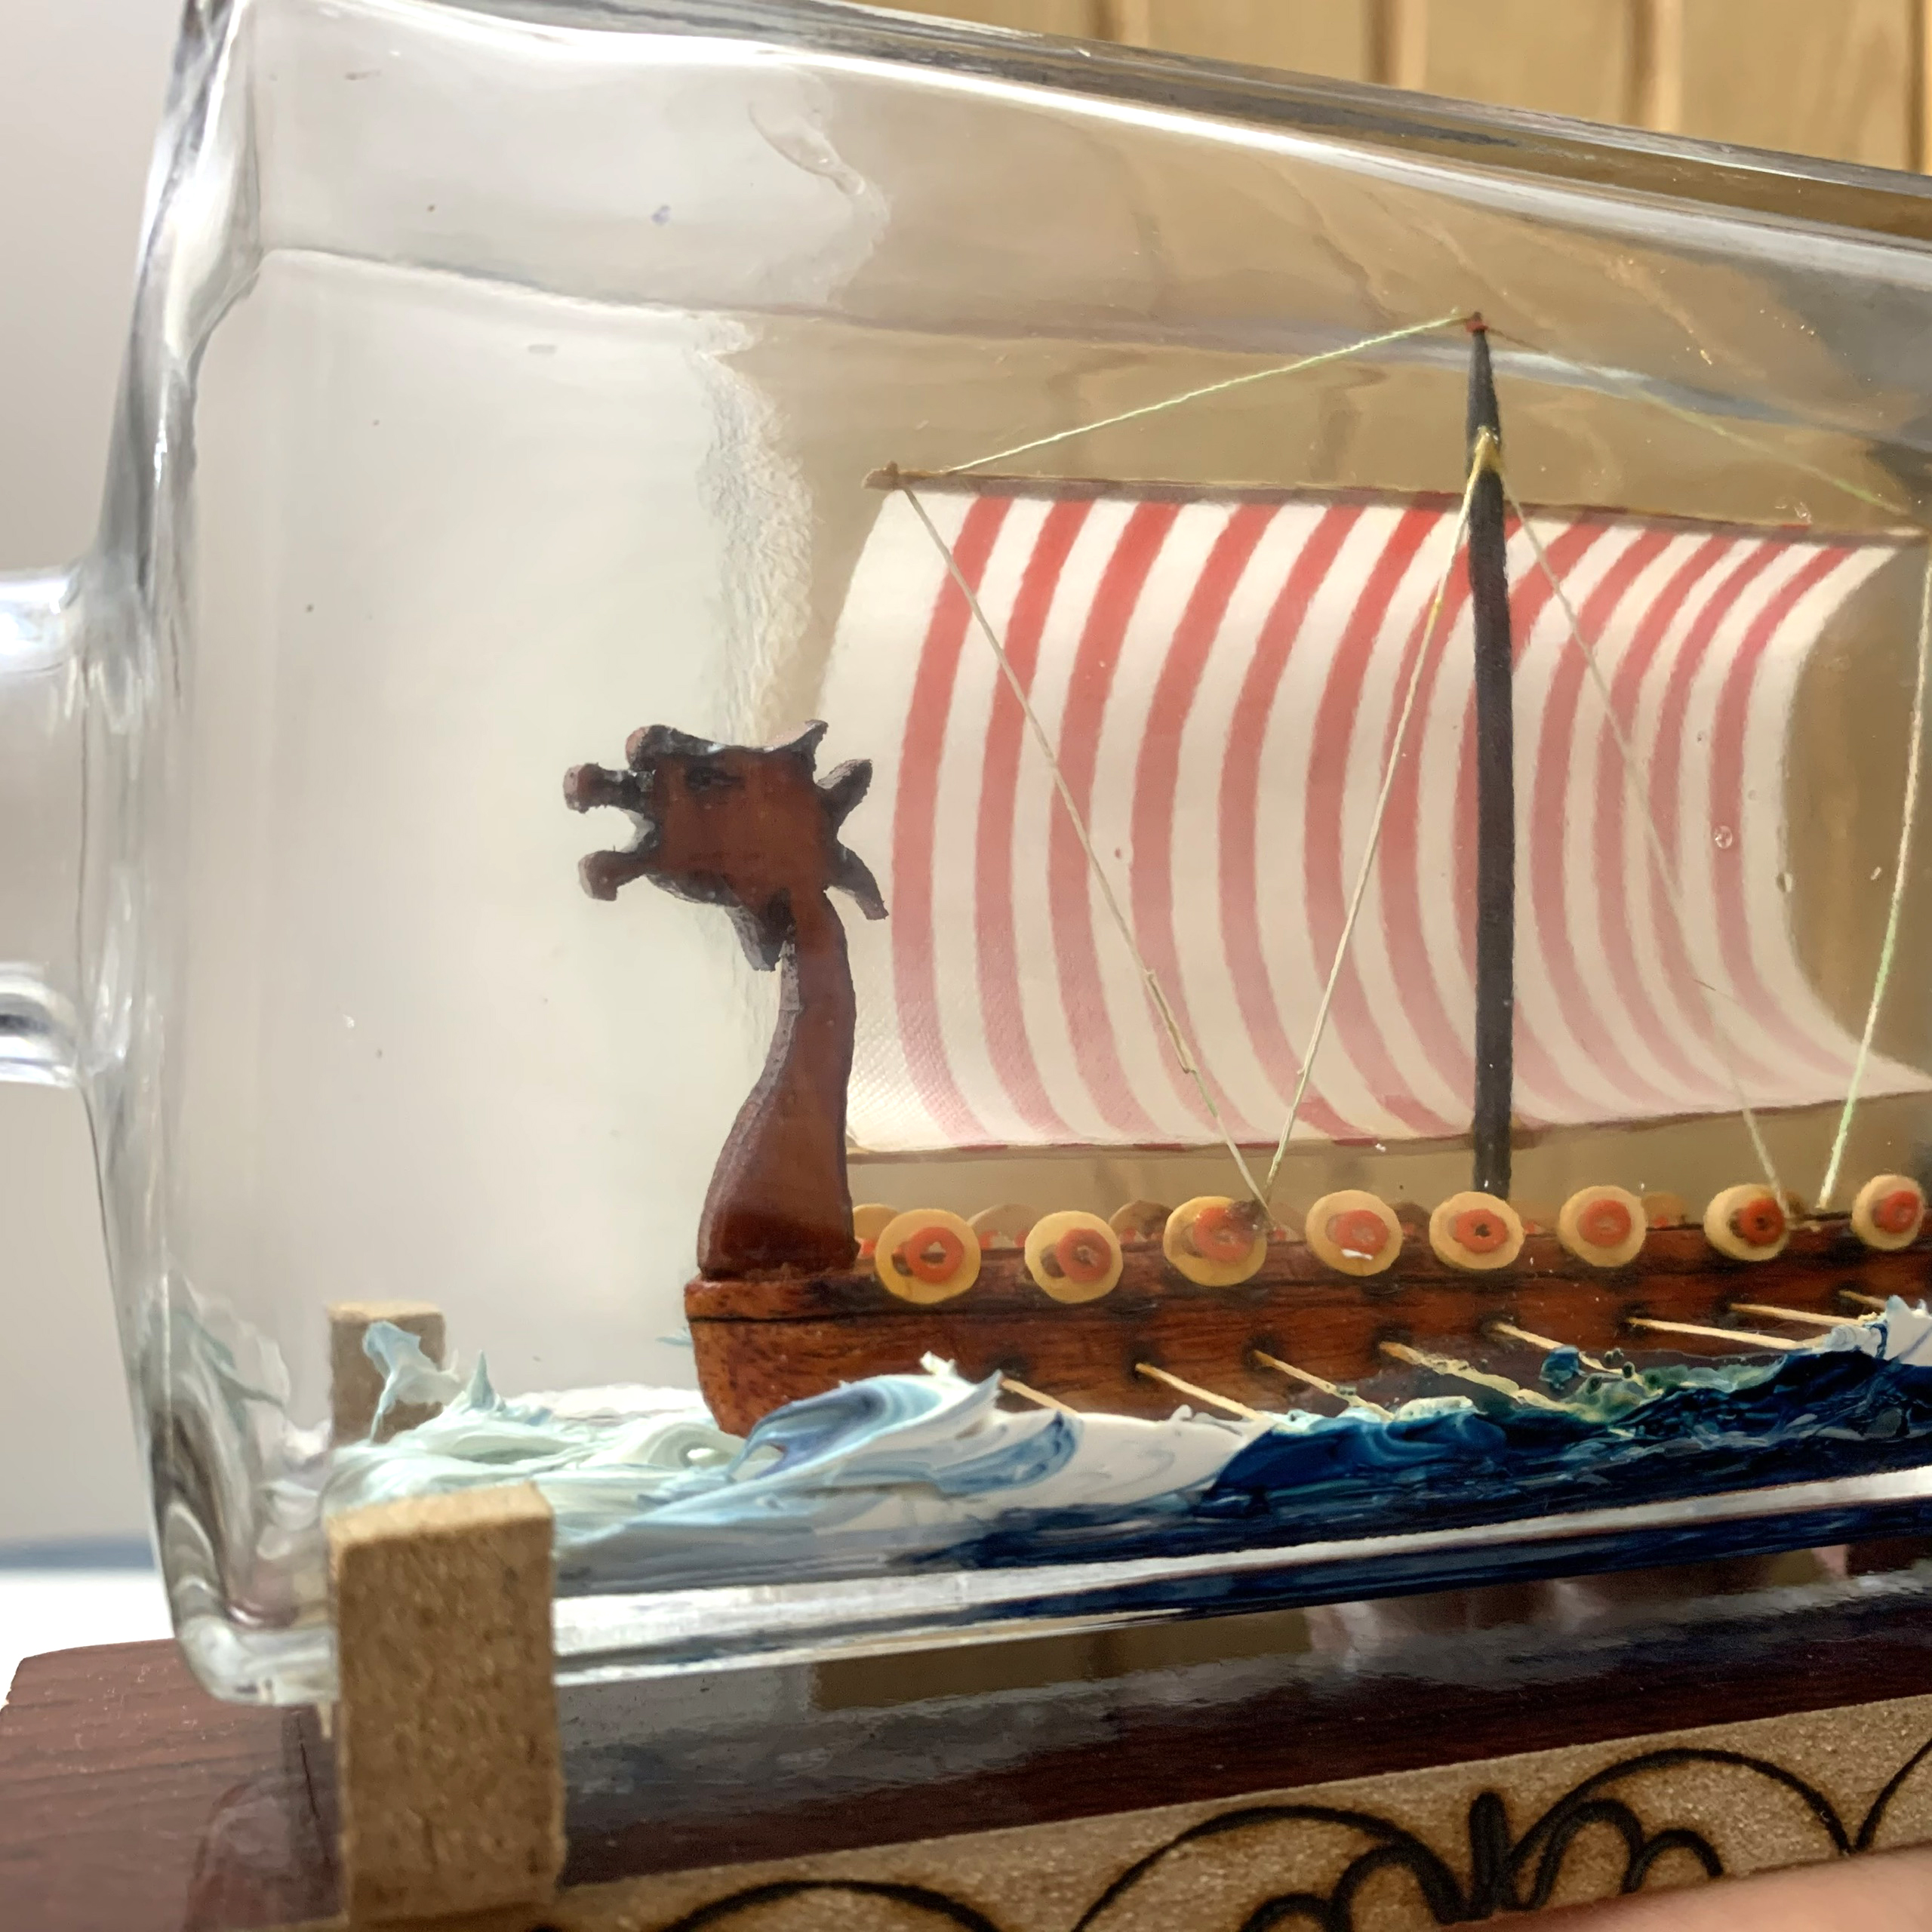 [Quà tặng đối tác] Mô hình thuyền gỗ Viking Longship trong chai thủy tinh kèm tiểu cảnh sóng biển - Dài 25cm